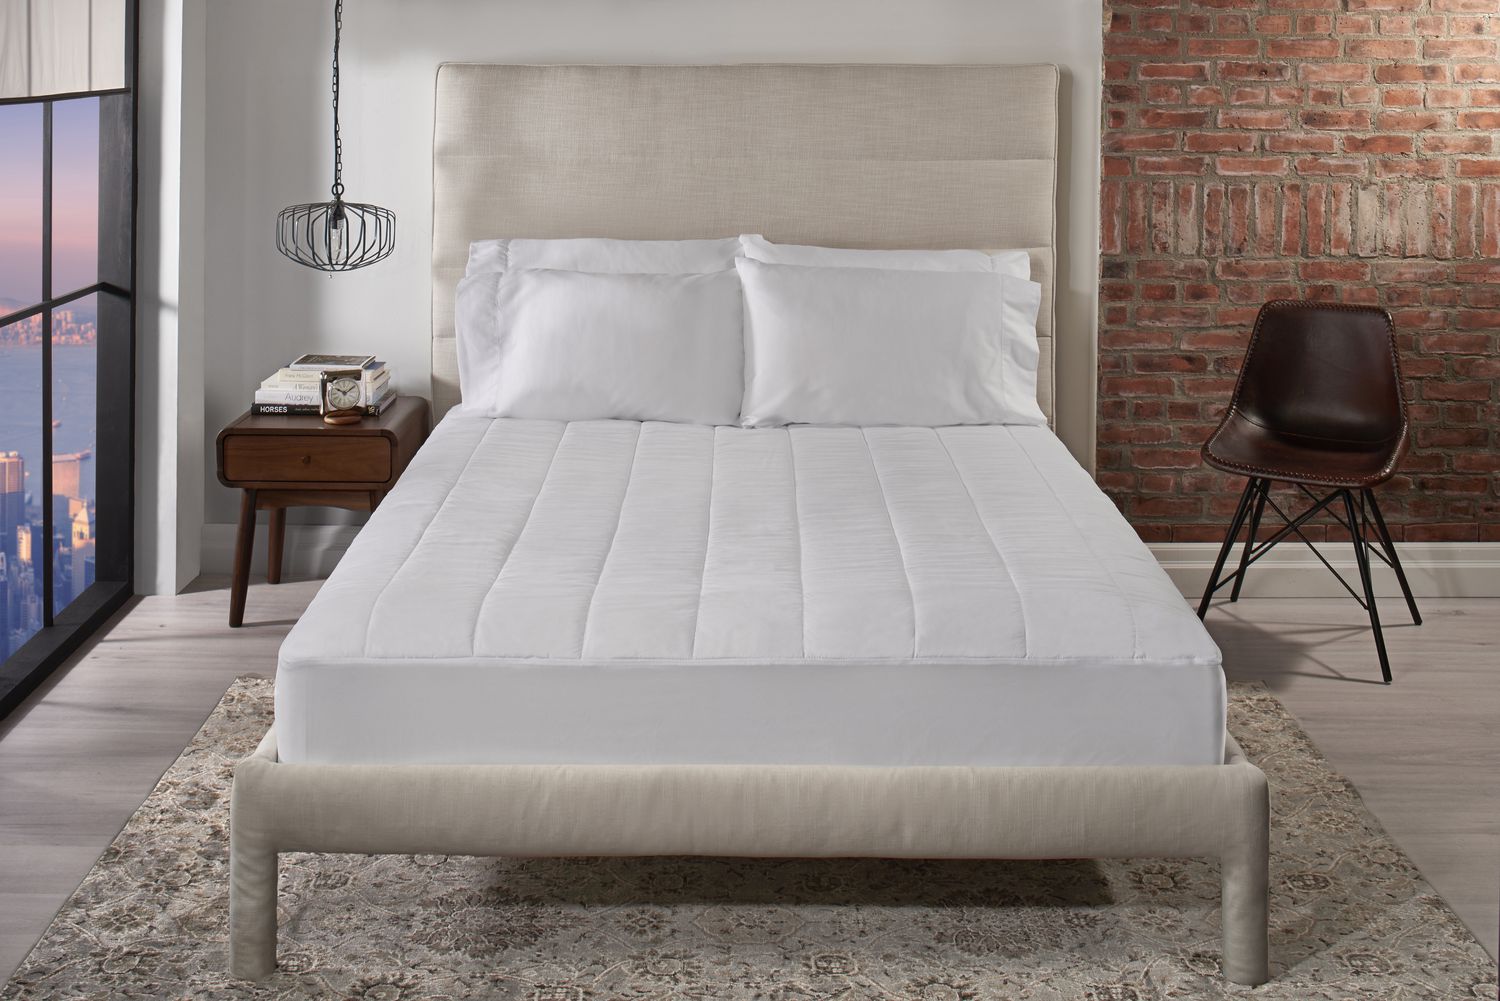 zenstone premium heated mattress pad